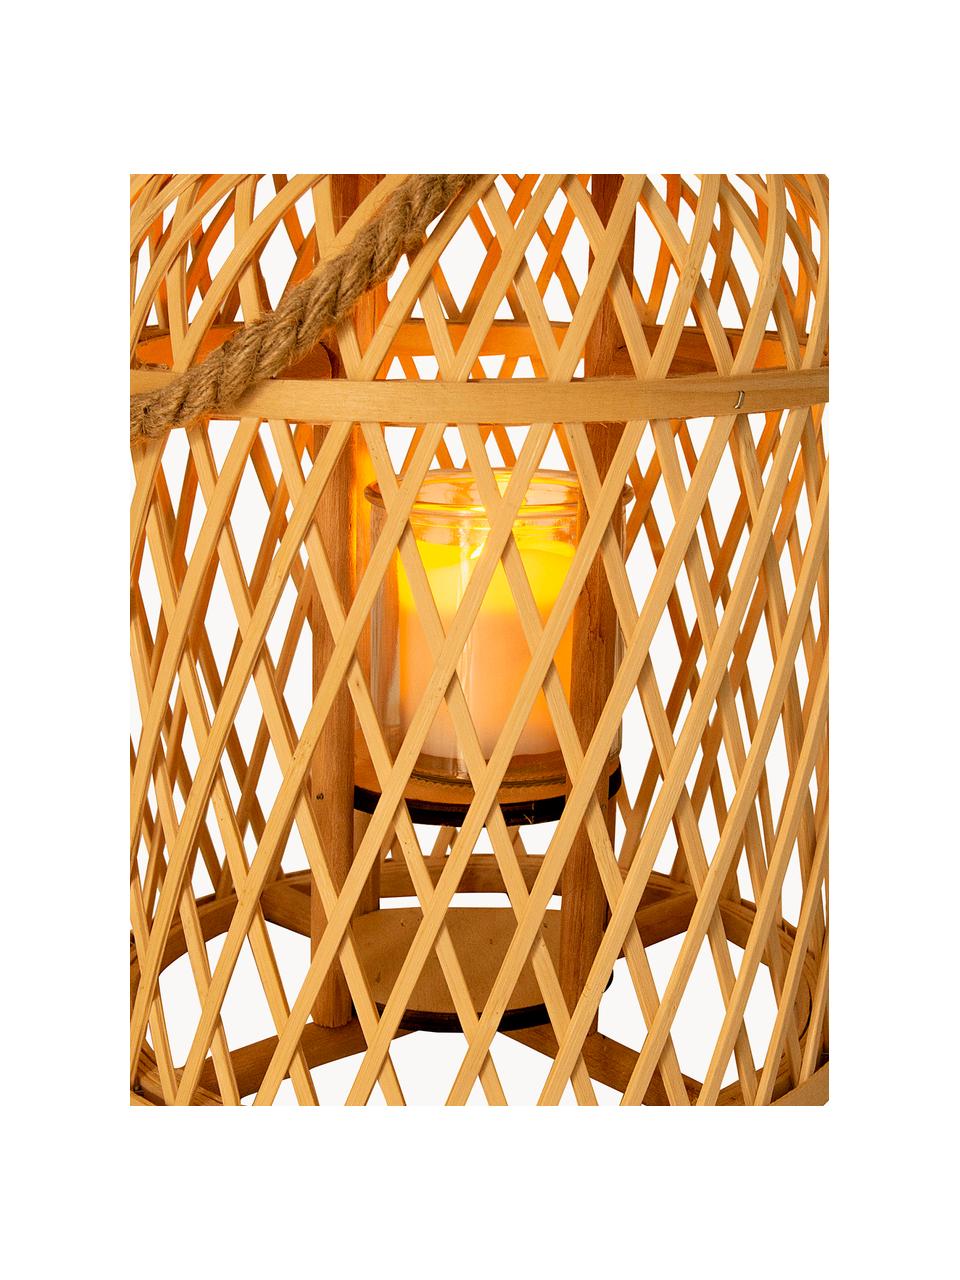 Solar LED-Kerze Korab mit Bambuskorb, Korb: Bambus, Griff: Jute, Hellbraun, Ø 23 x H 29 cm